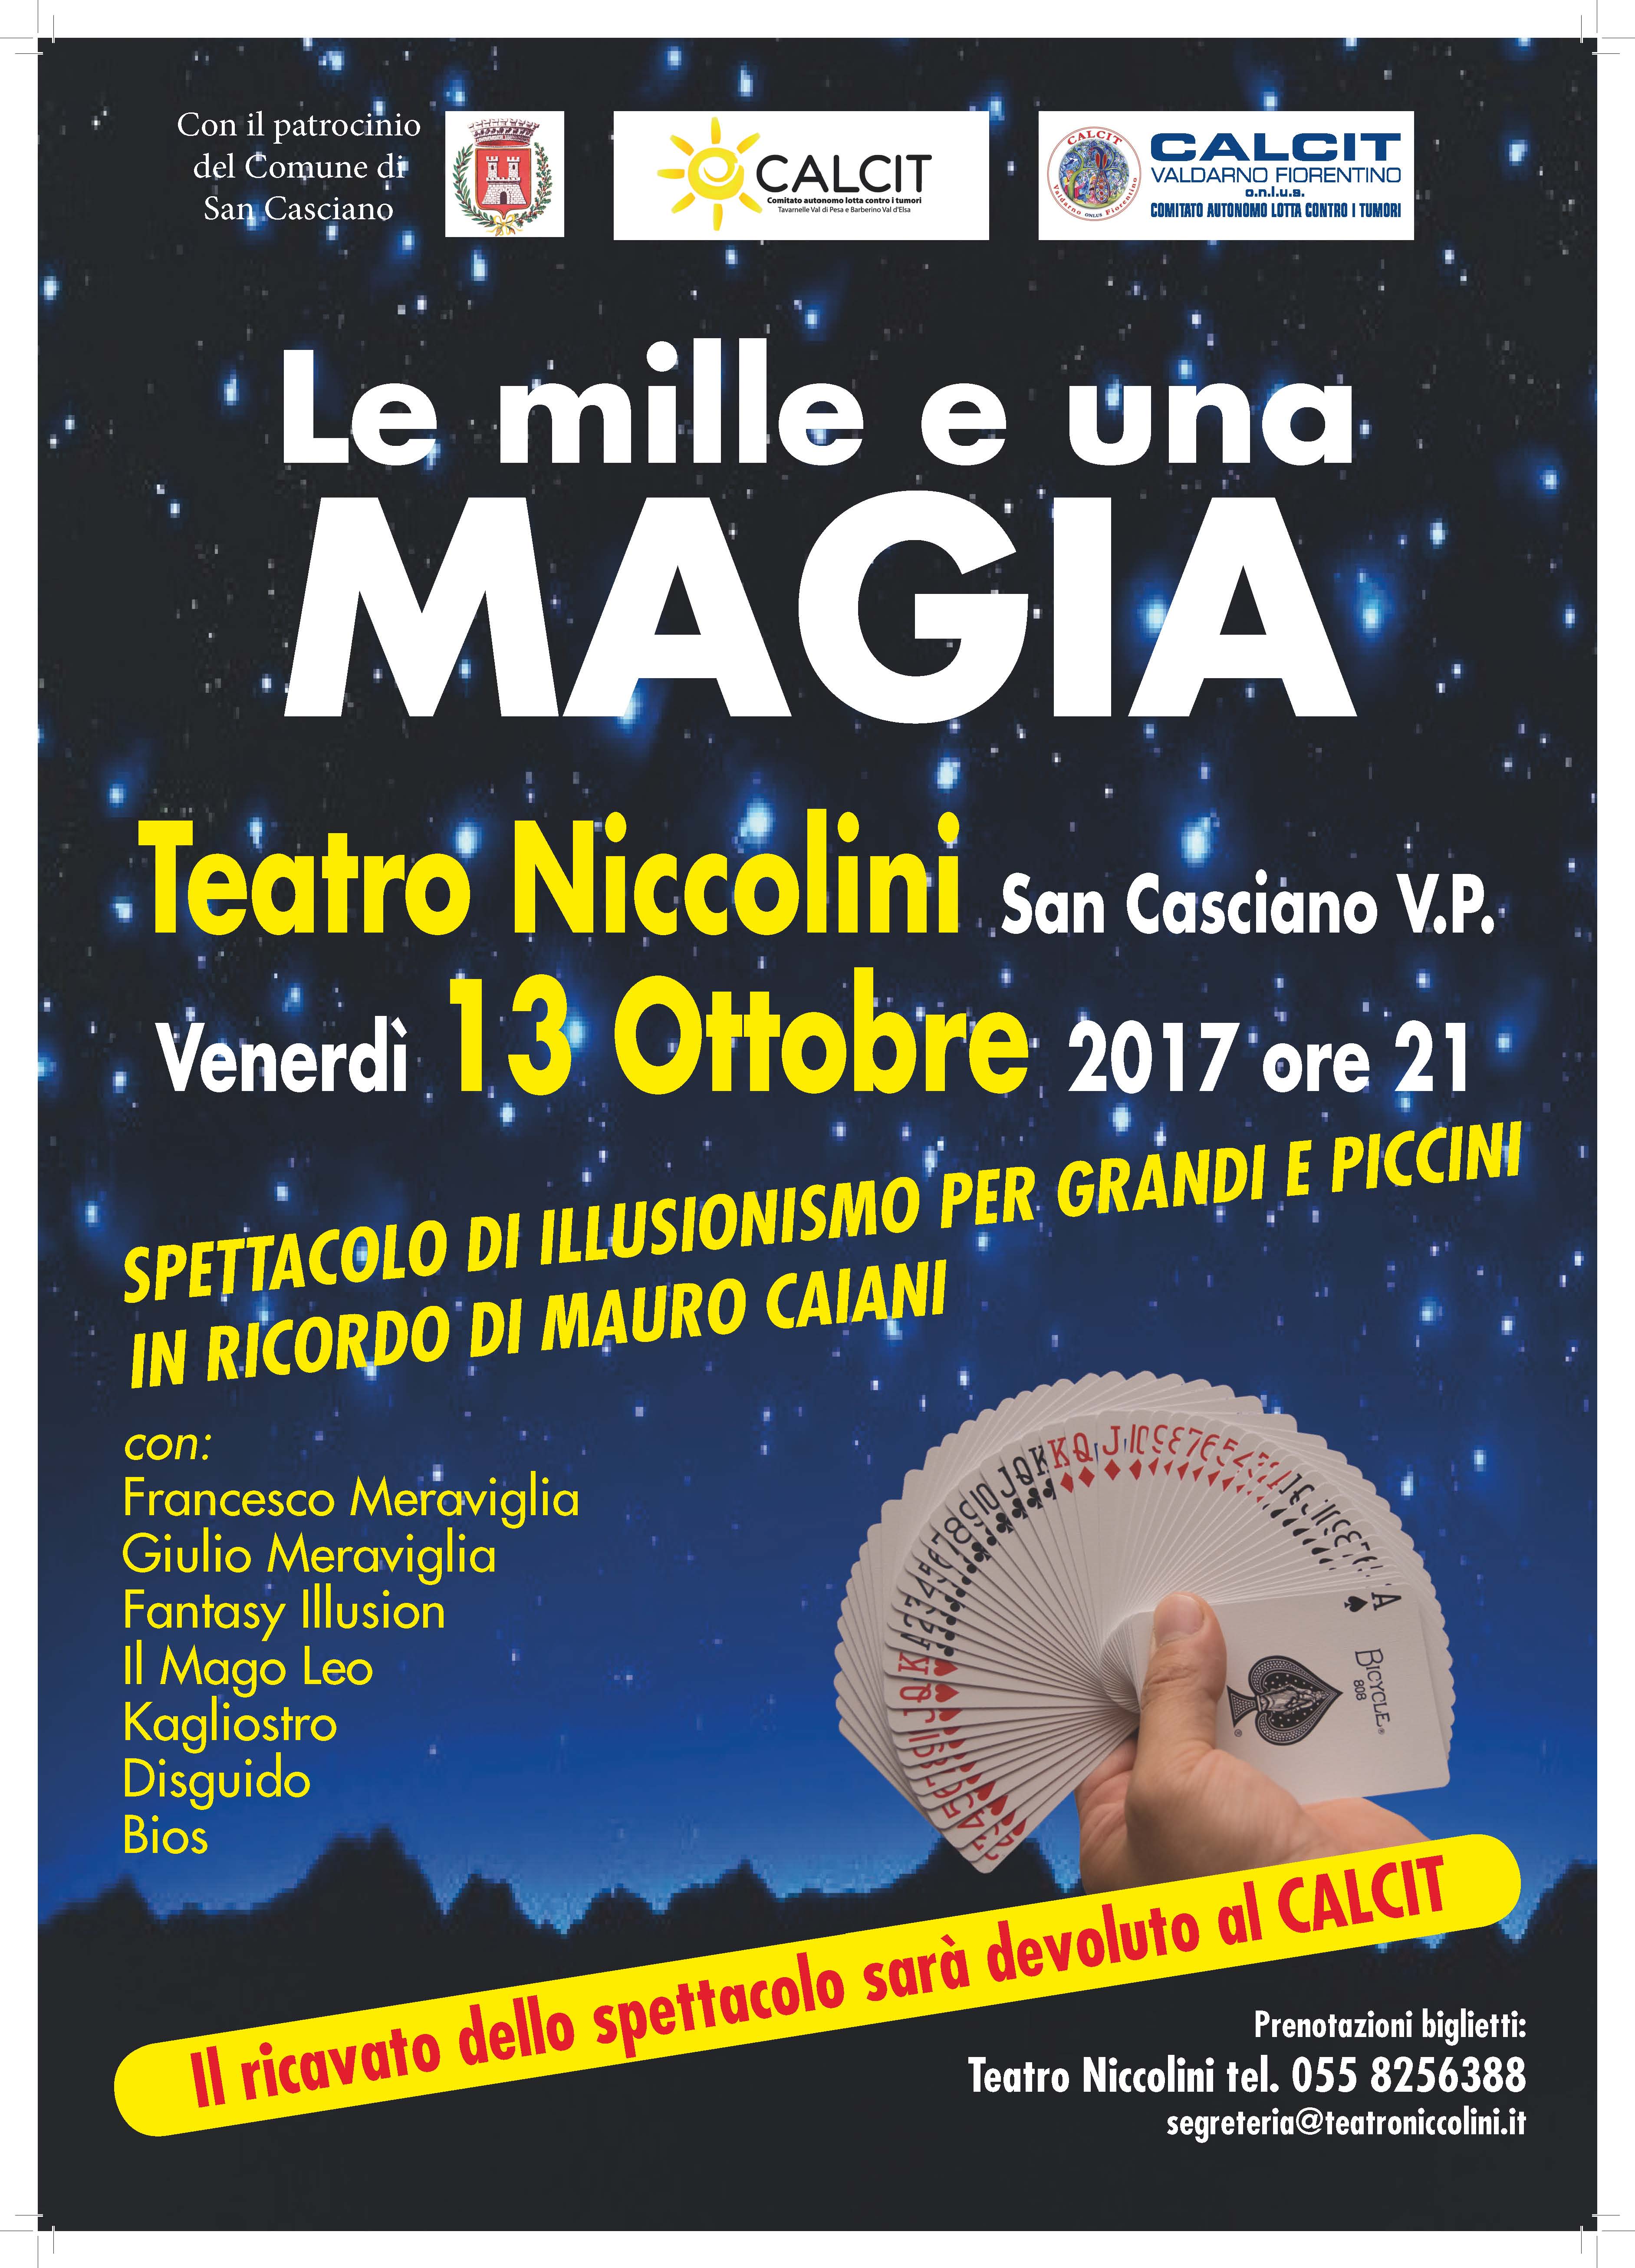 Locandina evento al Teatro Niccolini di Tavarnelle Val di Pesa